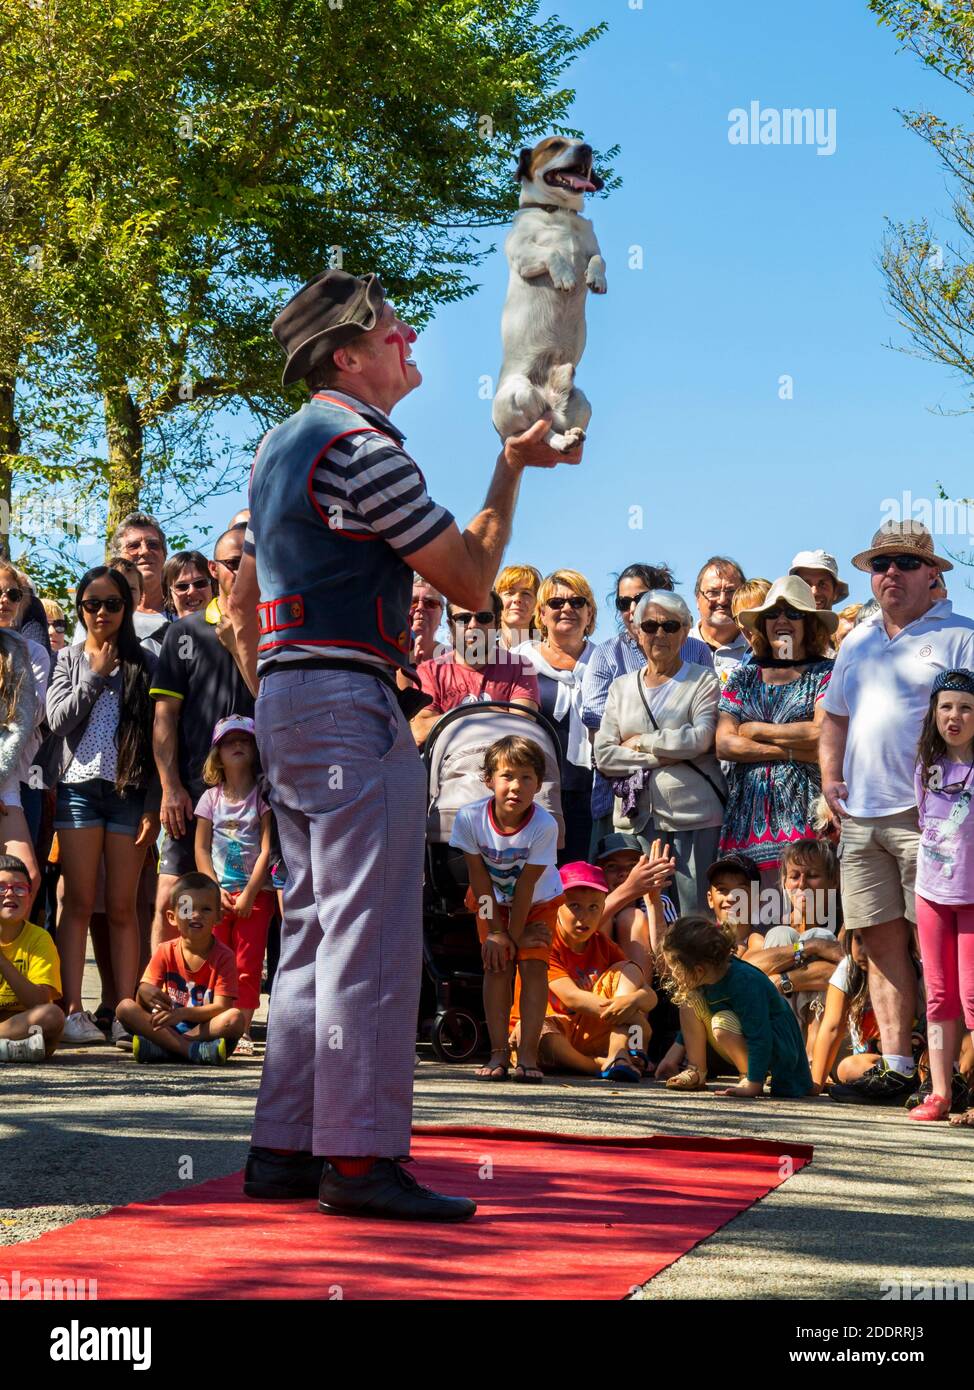 Clown traditionnel se présentant avec un chien à l'extérieur d'une foule de village à Plovan, dans le nord-ouest de la France, pendant les vacances publiques du 15 août. Banque D'Images